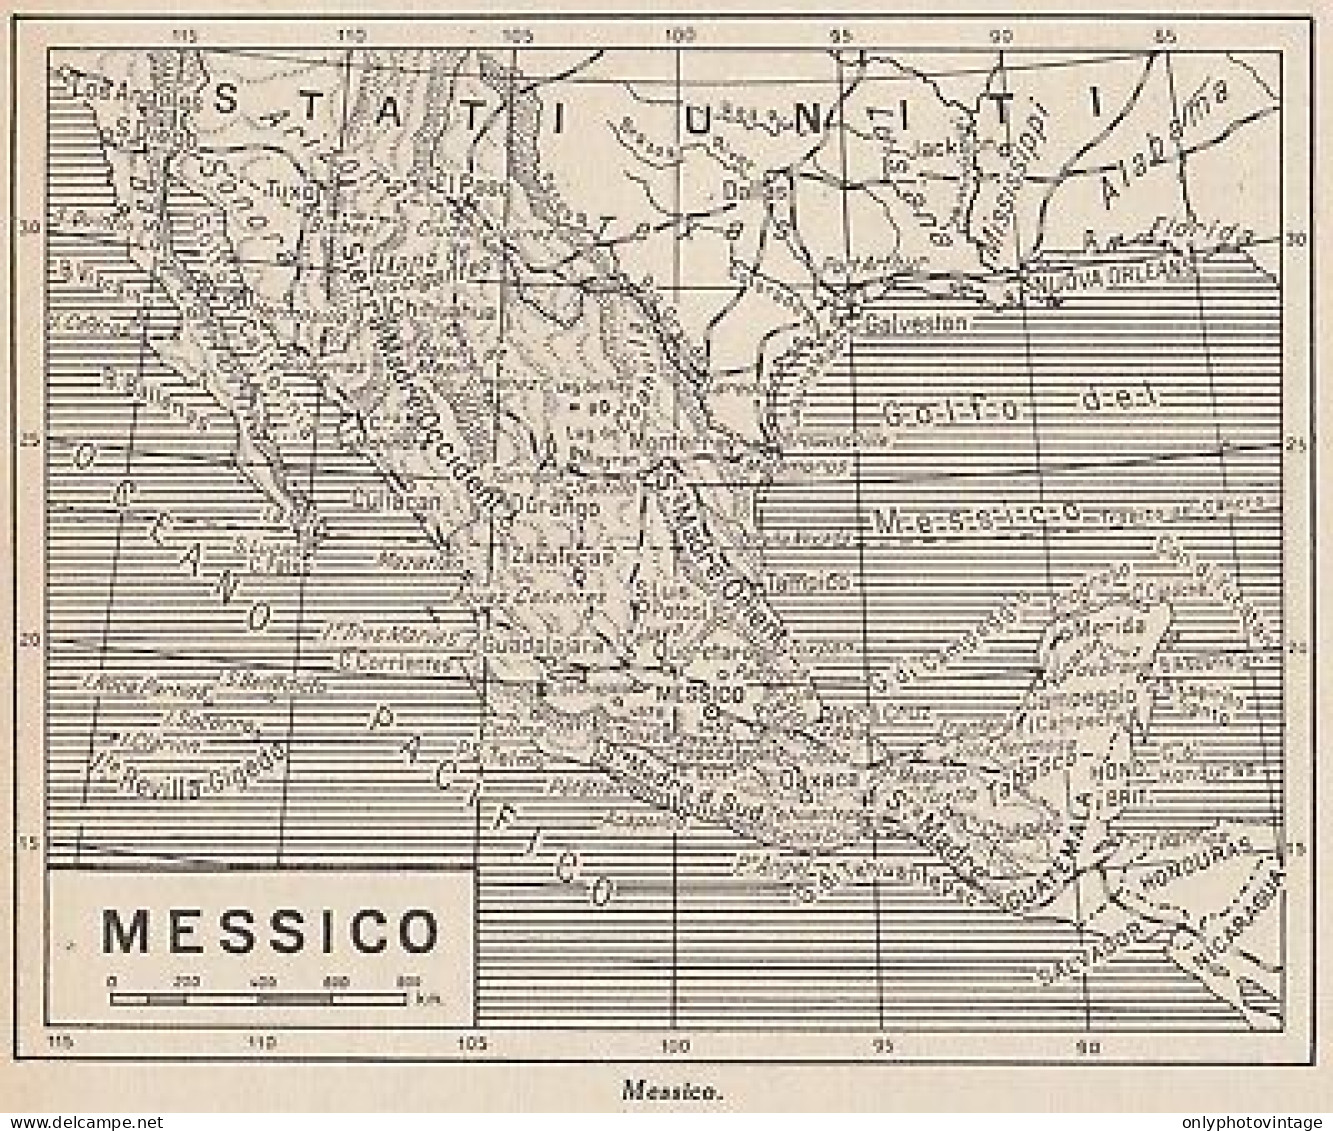 Messico - 1953 Mappa Epoca - Vintage Map - Cartes Géographiques